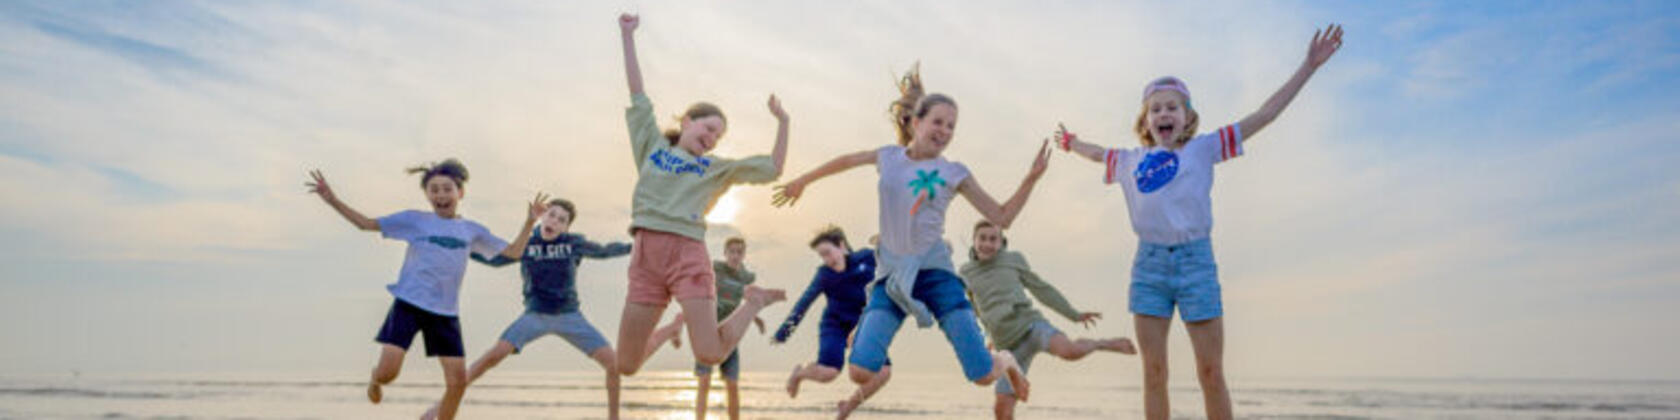 kinderen op het strand springen in de lucht